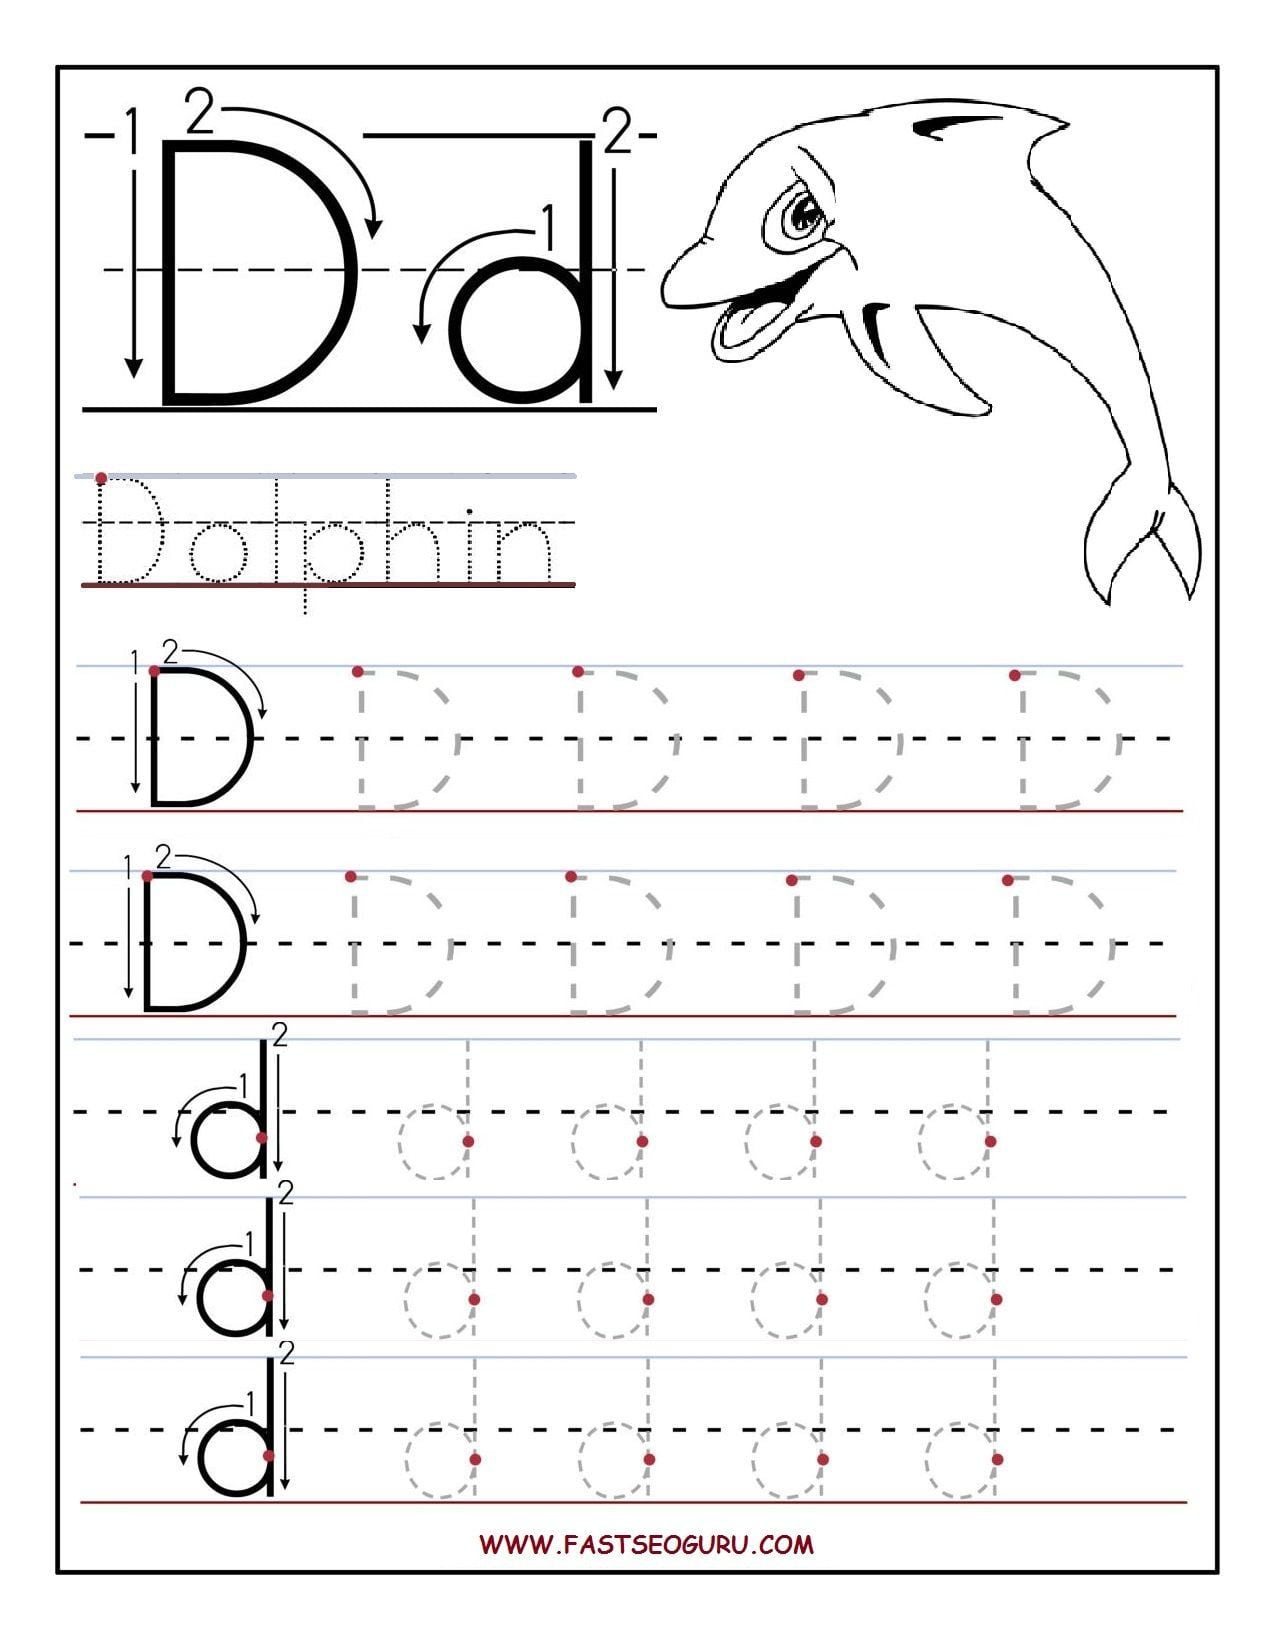 Alphabet Worksheets For Kindergarten Elegant Preschool Letter